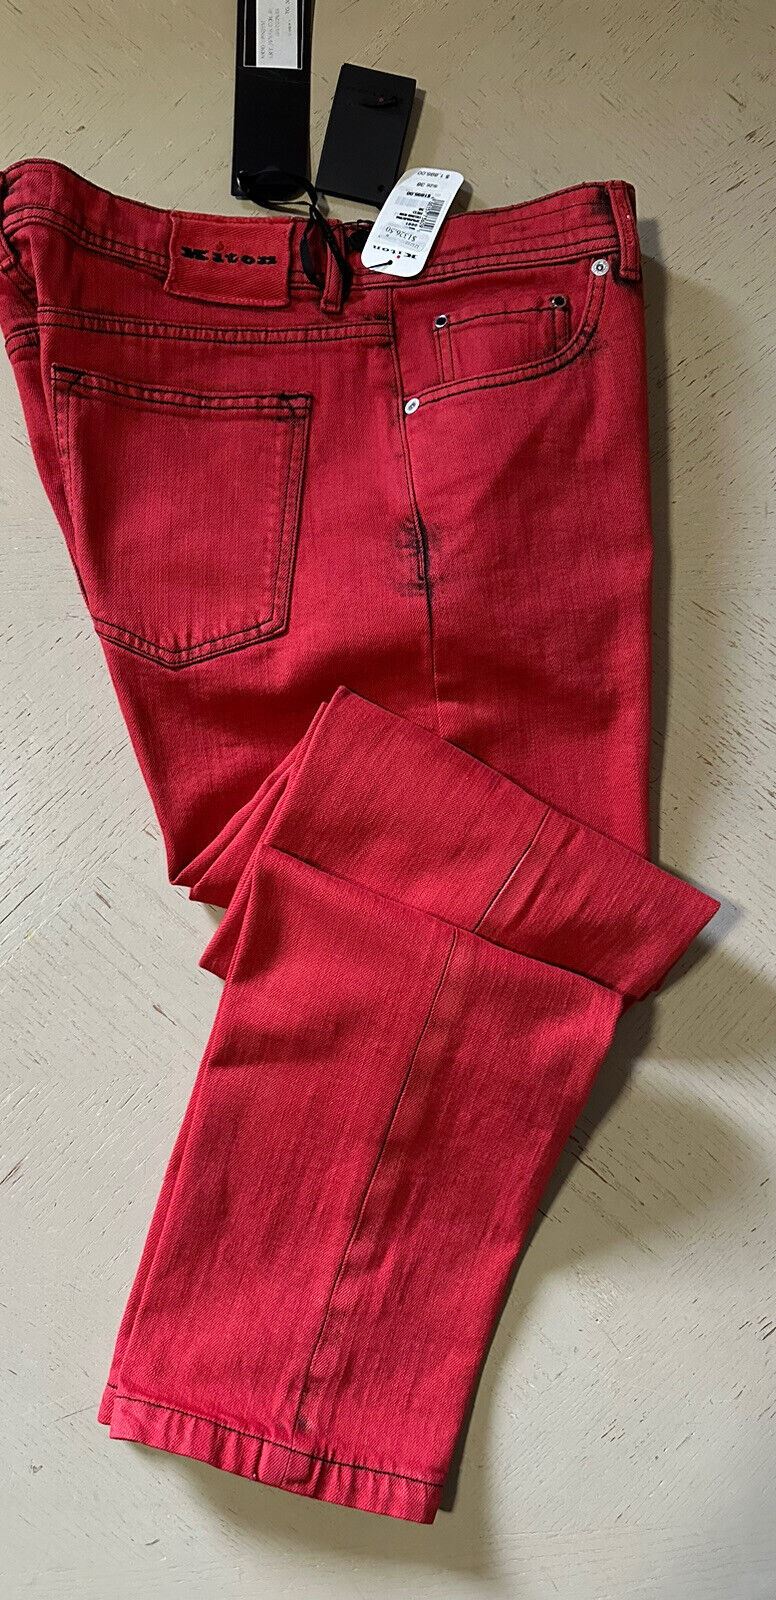 NWT $1895 Kiton Мужские прямые облегающие джинсовые брюки красные 38 США (размер 36)